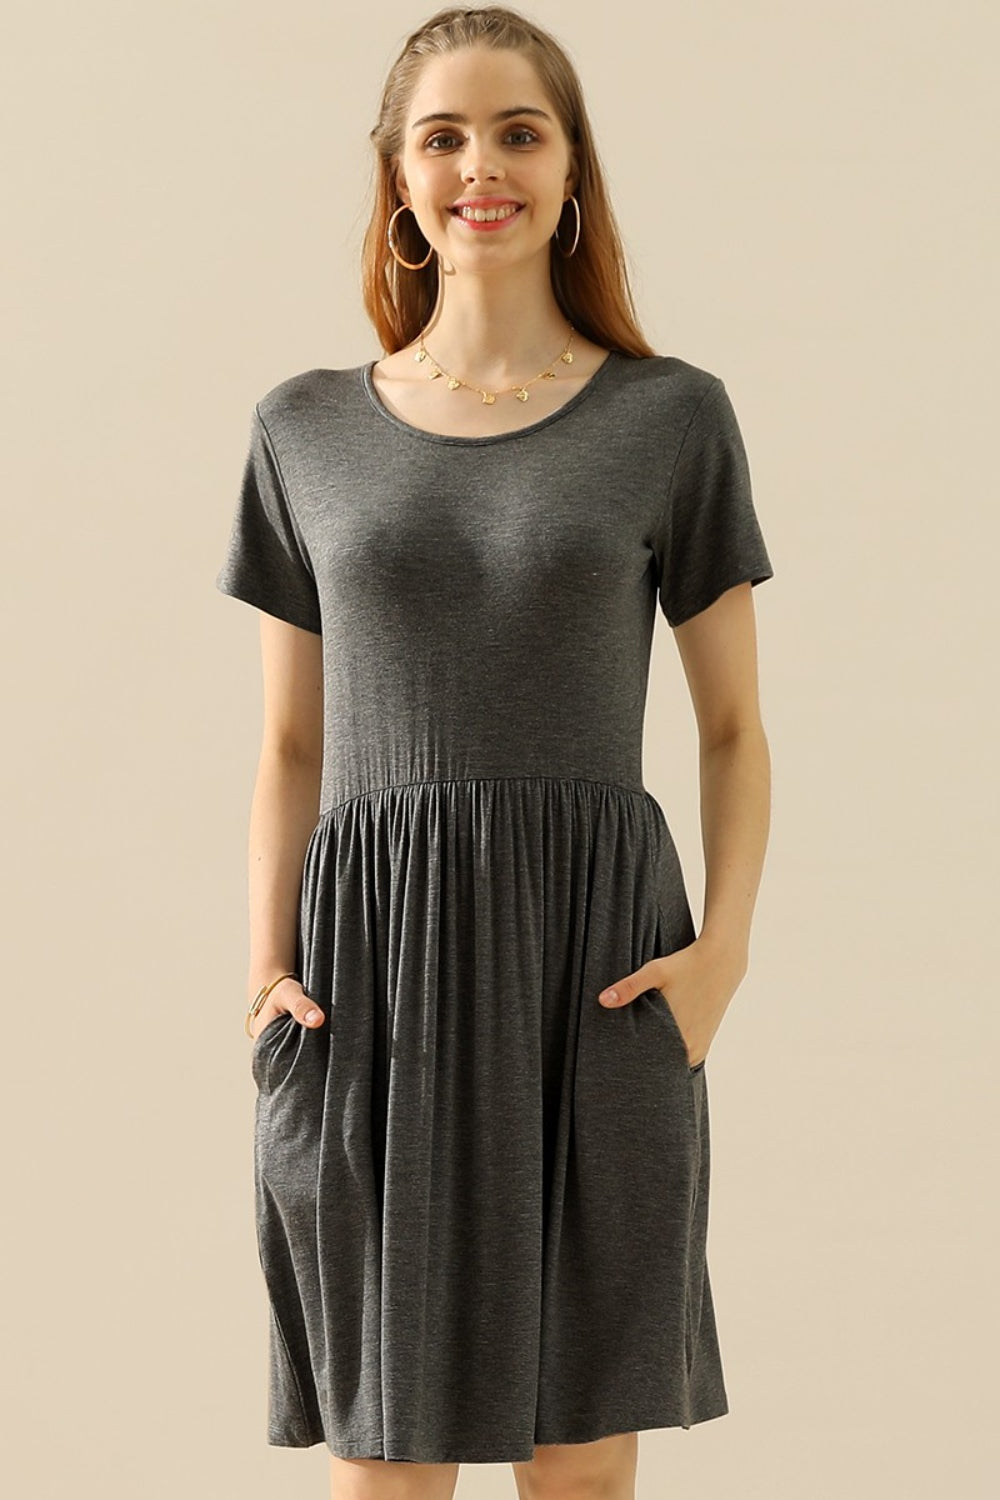 Ninexis – Gerüschtes Kleid in voller Größe mit Rundhalsausschnitt und Taschen